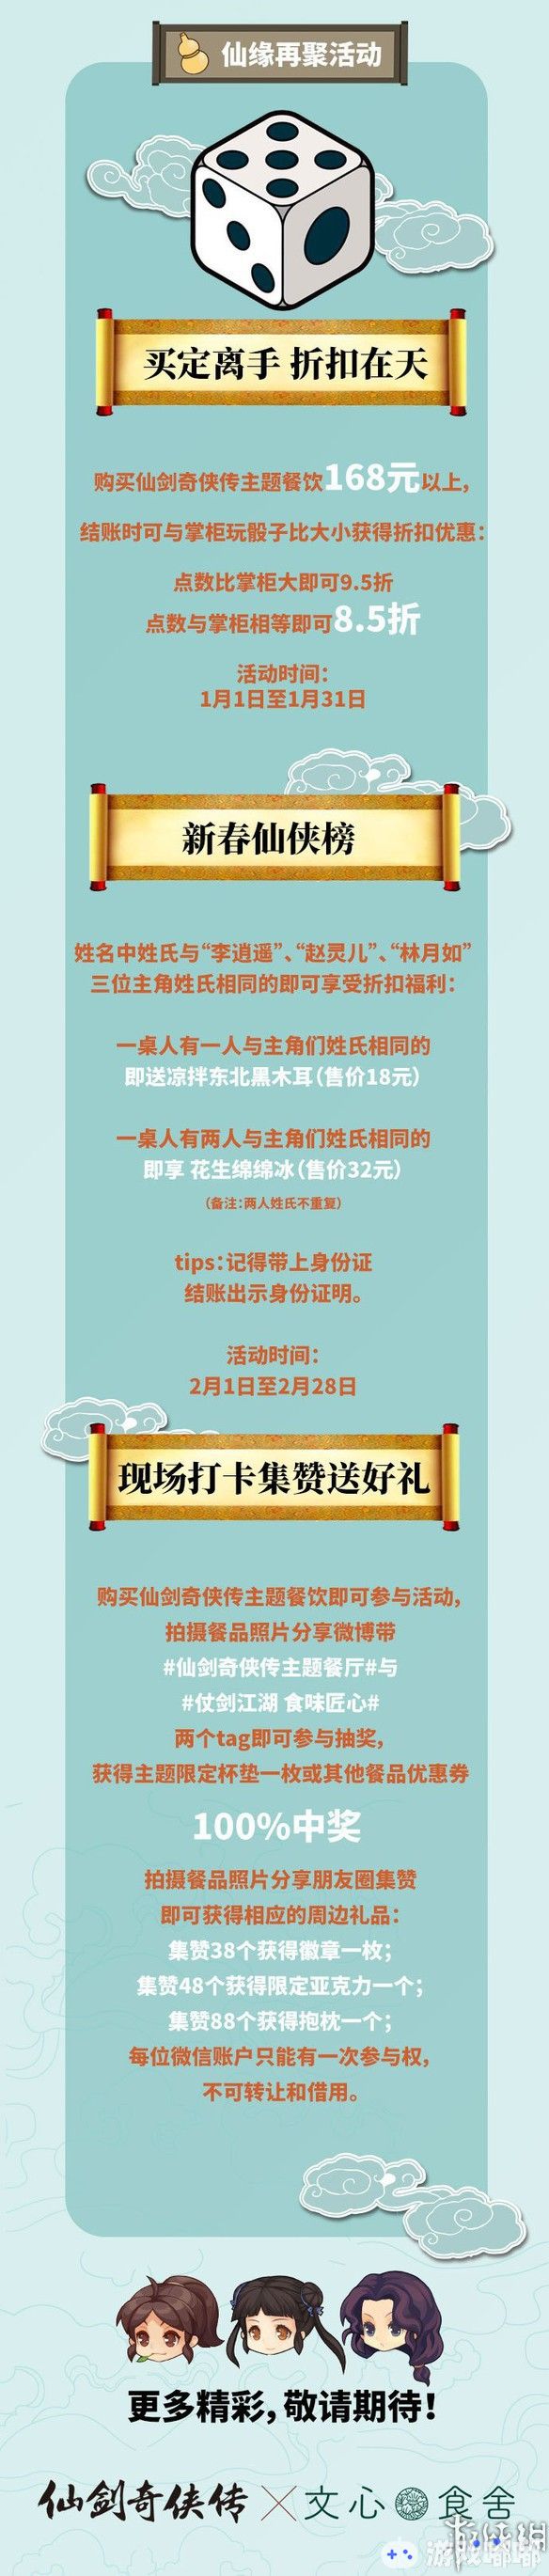 《仙剑奇侠传》主题餐厅将于1月1日在上海开启，不仅有《仙剑》主题餐点，还有各种特典周边。一起来了解下！